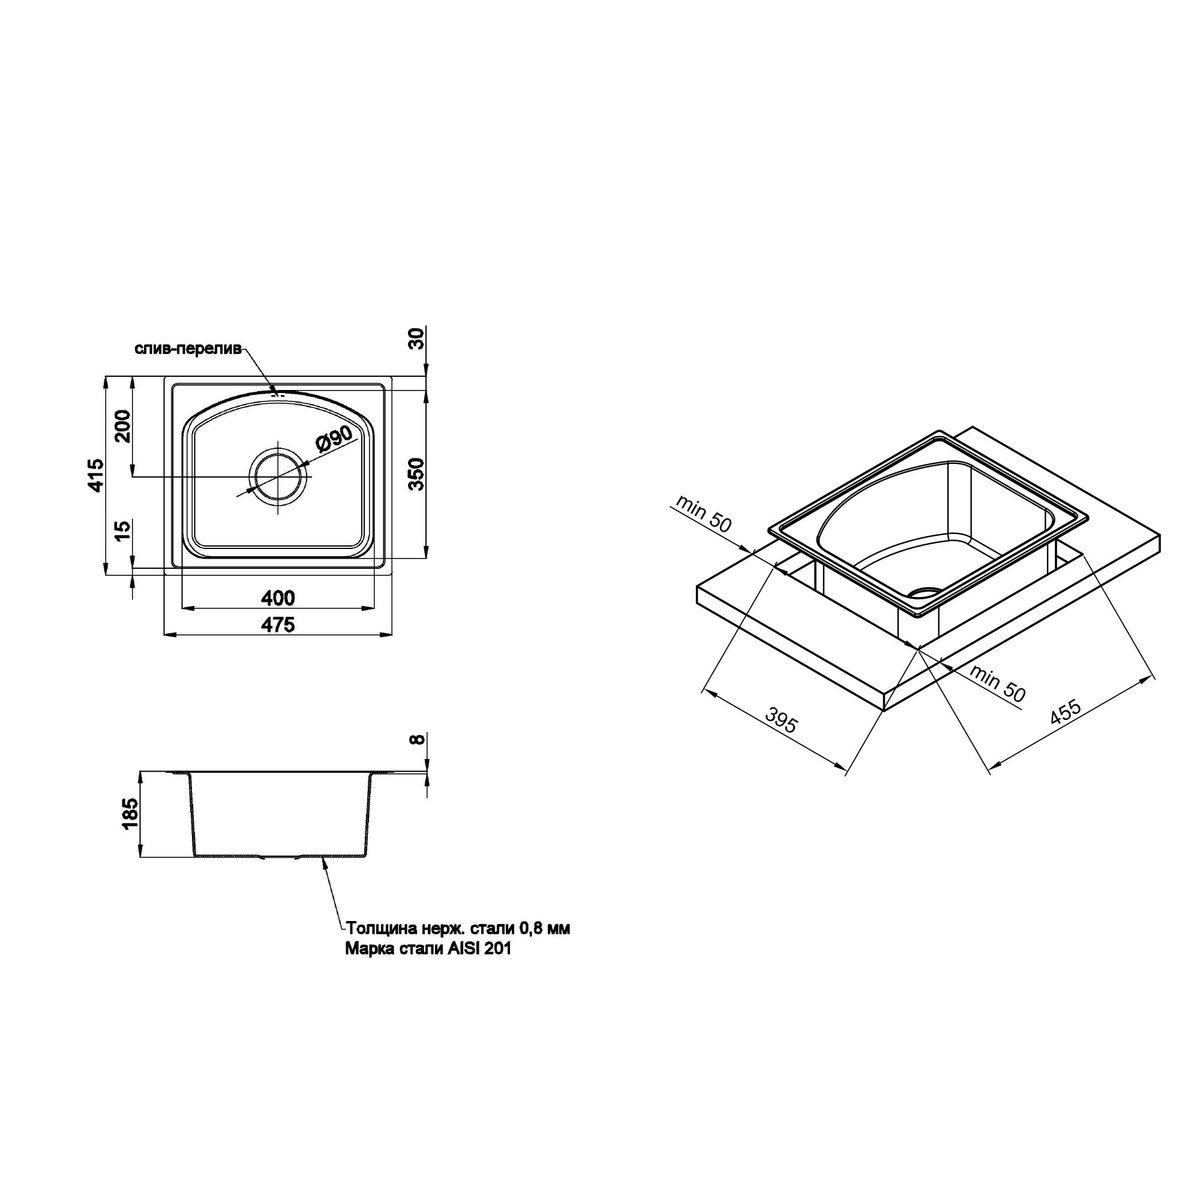 Кухонная мойка металлическая прямоугольная Q-TAP 415мм x 475мм микротекстура 0.8мм с сифоном QT4842MICDEC08